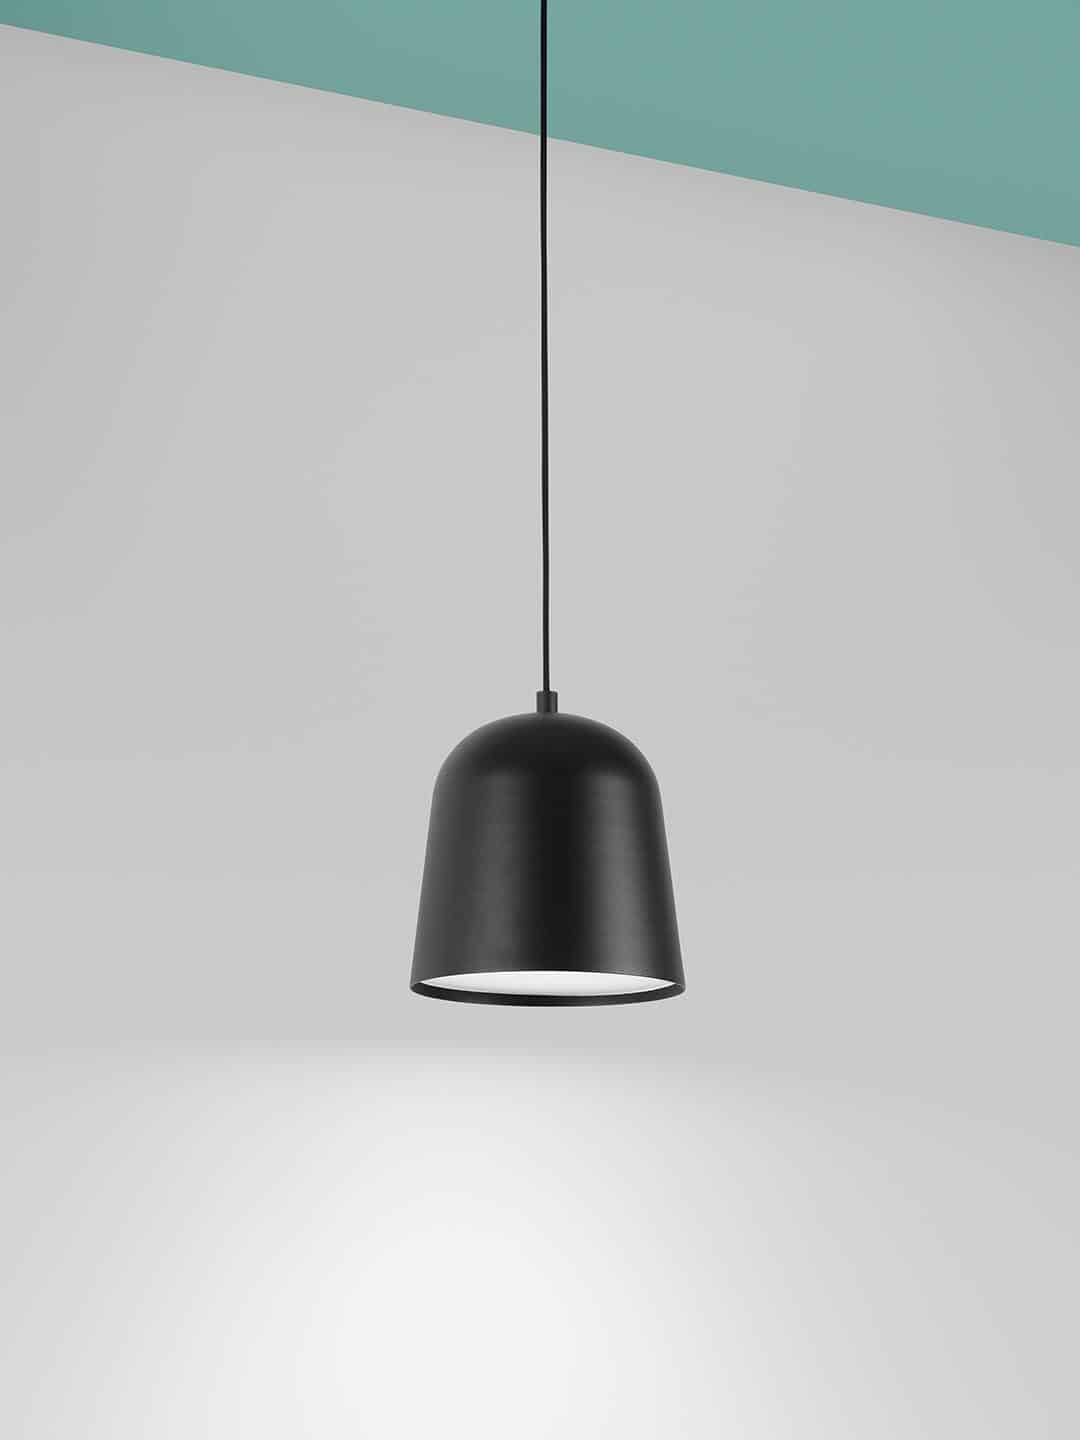 Скандинавский подвесной светильник Zero Lighting Convex Large черного цвета